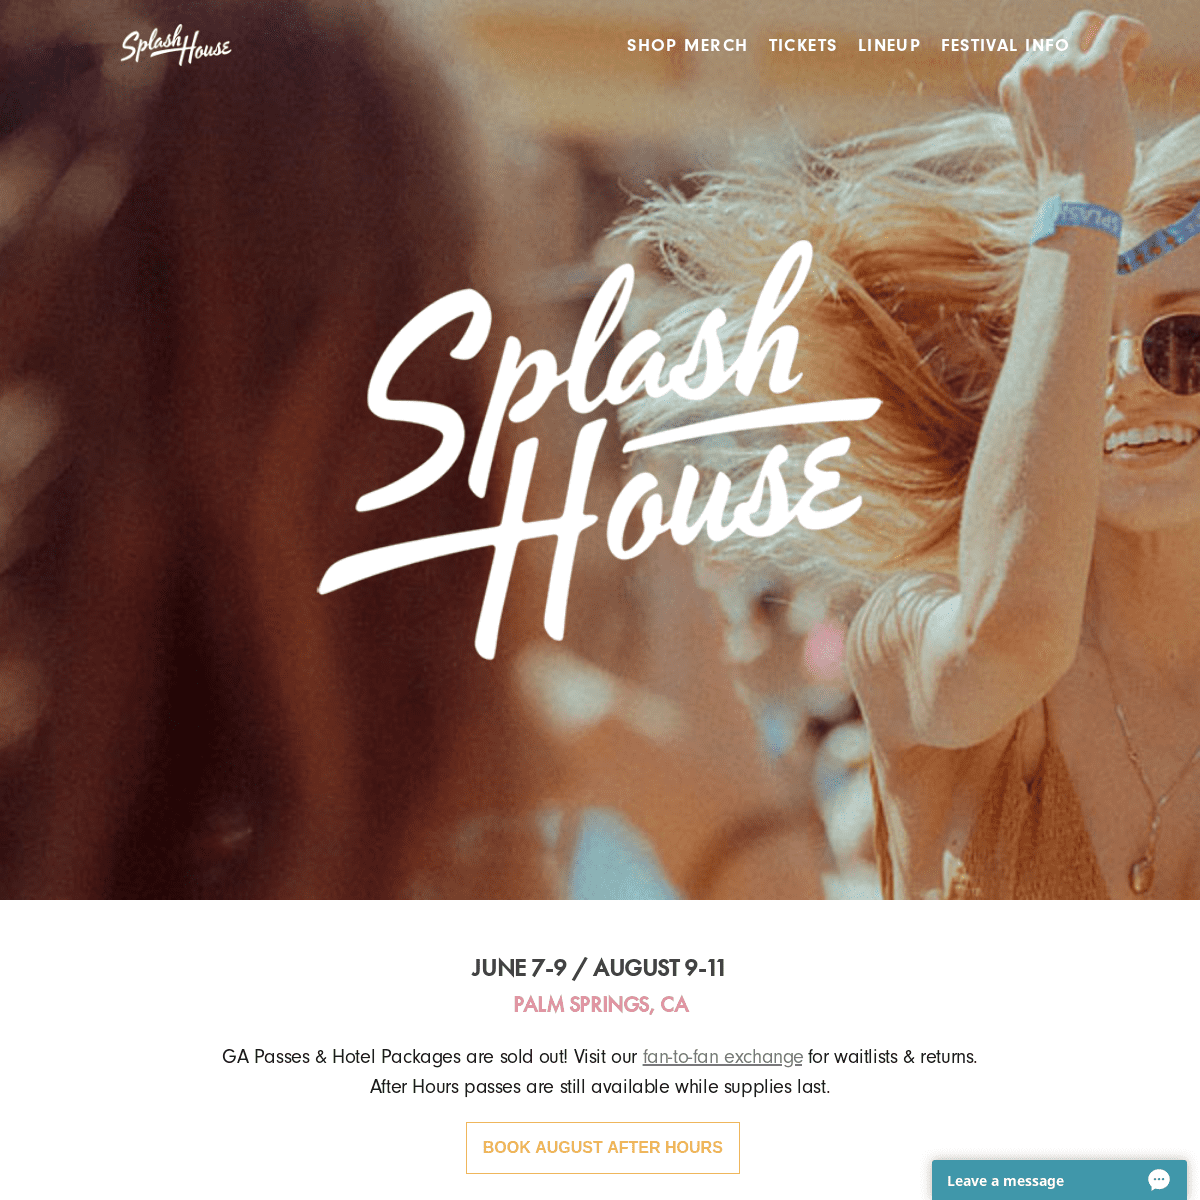 Splash House 2019 | June 7-9 & August 9-11 in Palm Springs, CA